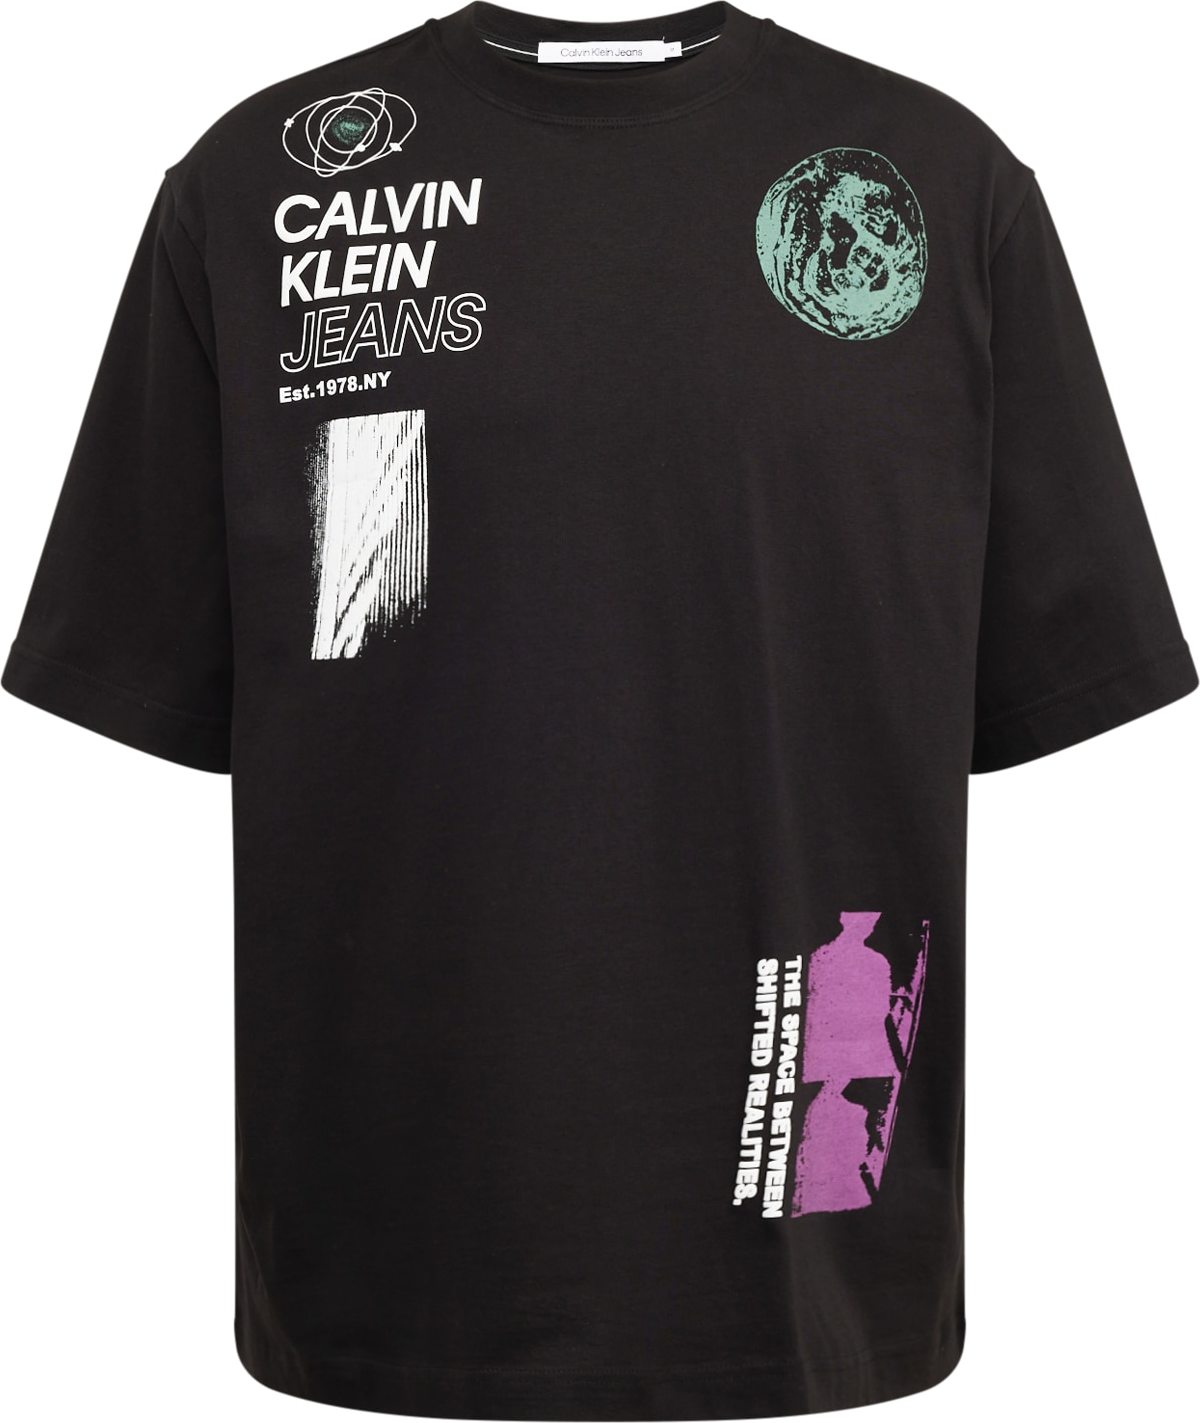 Tričko Calvin Klein Jeans petrolejová / tmavě fialová / černá / bílá